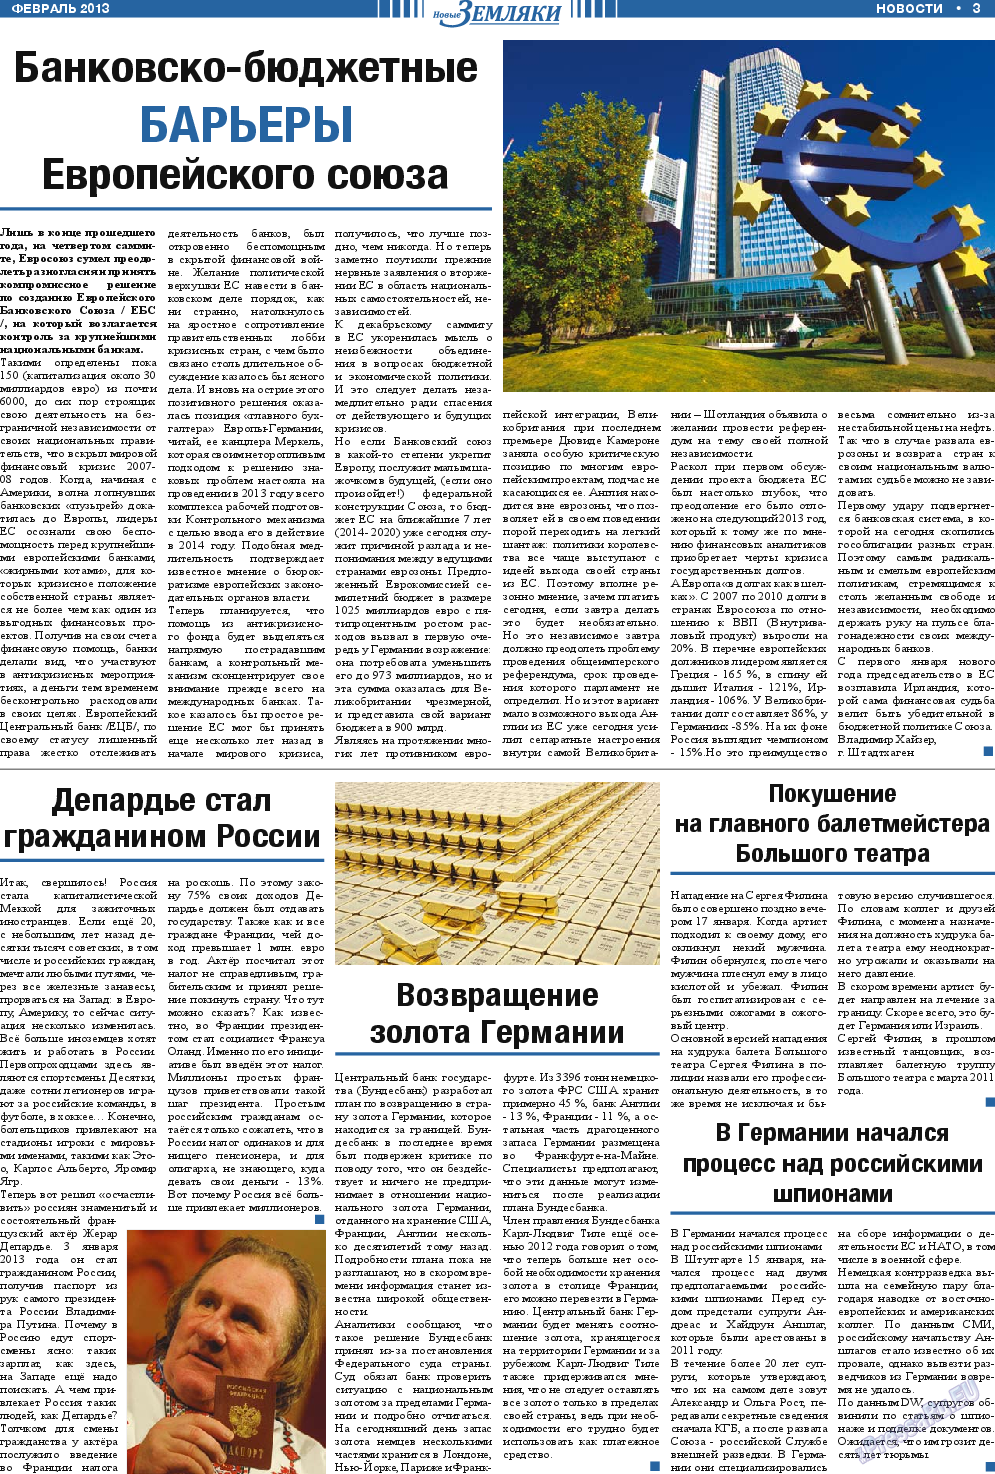 Новые Земляки, газета. 2013 №2 стр.3